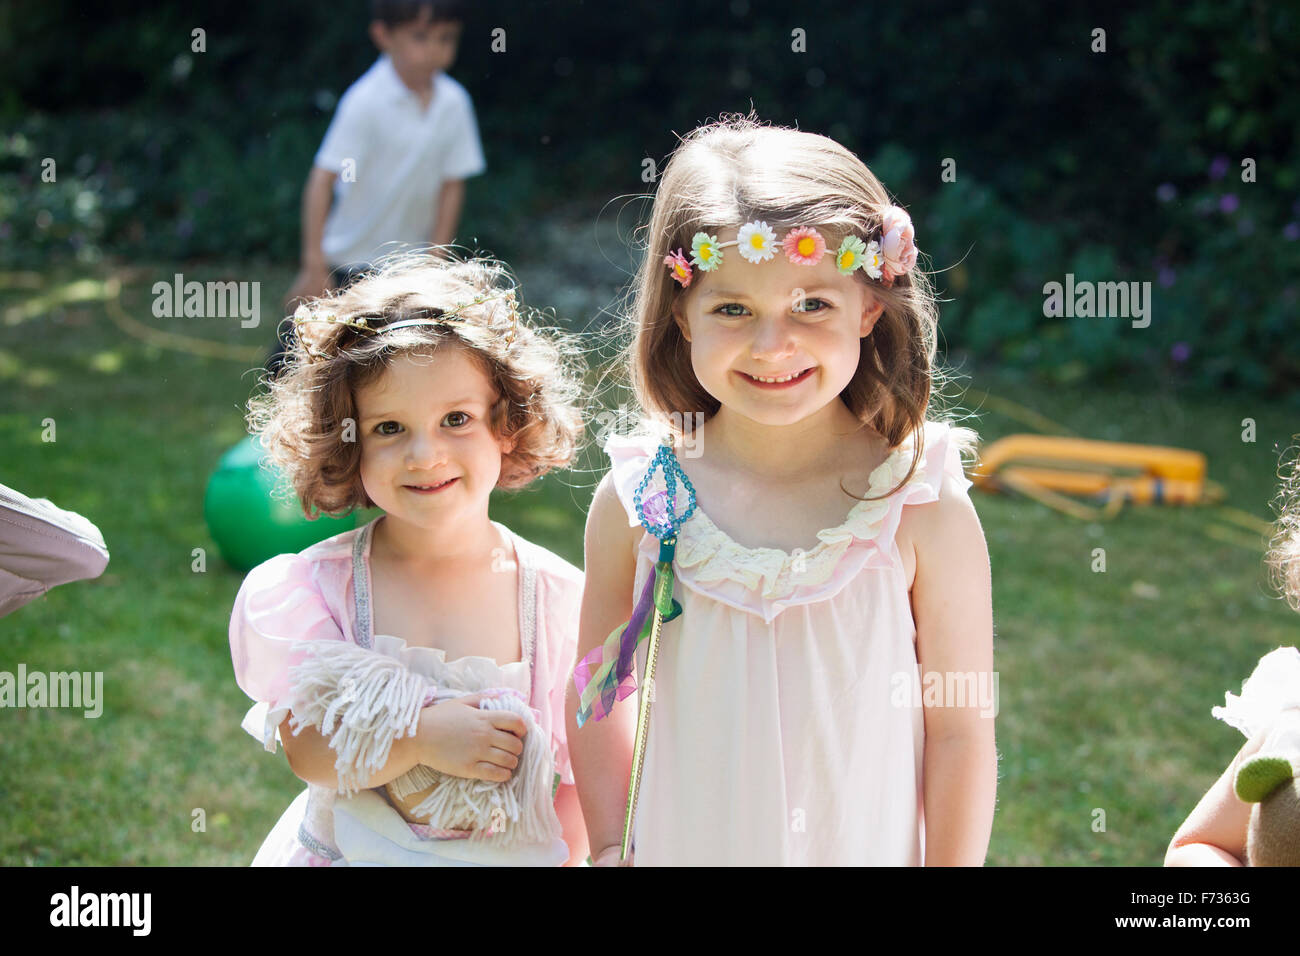 Zwei junge Mädchen auf einer Gartenparty lächelnd. Stockfoto